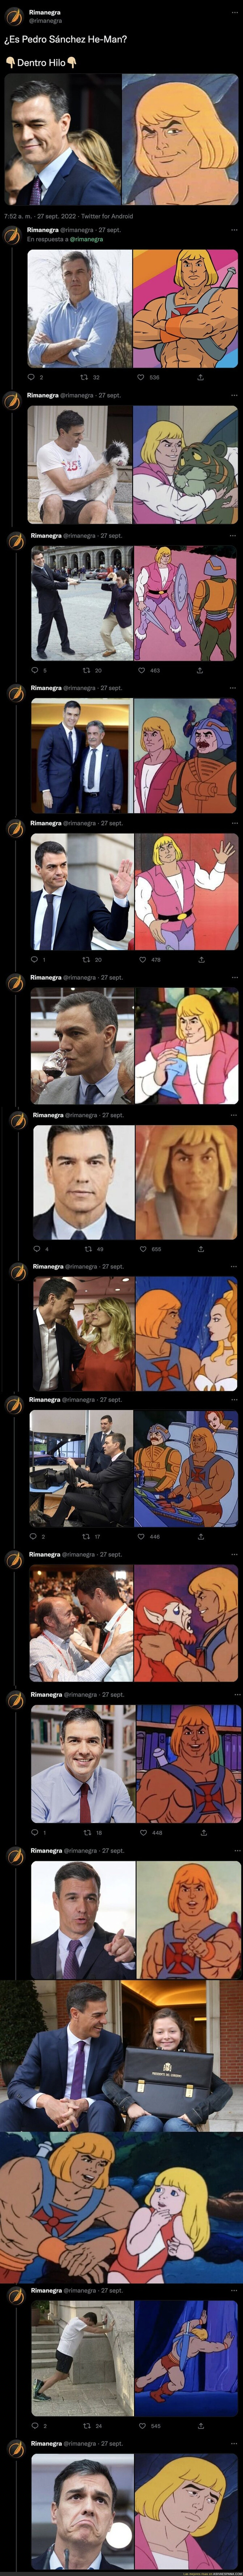 Todas estas imágenes hacen pensar que el personaje He-Man está basado en Pedro Sánchez